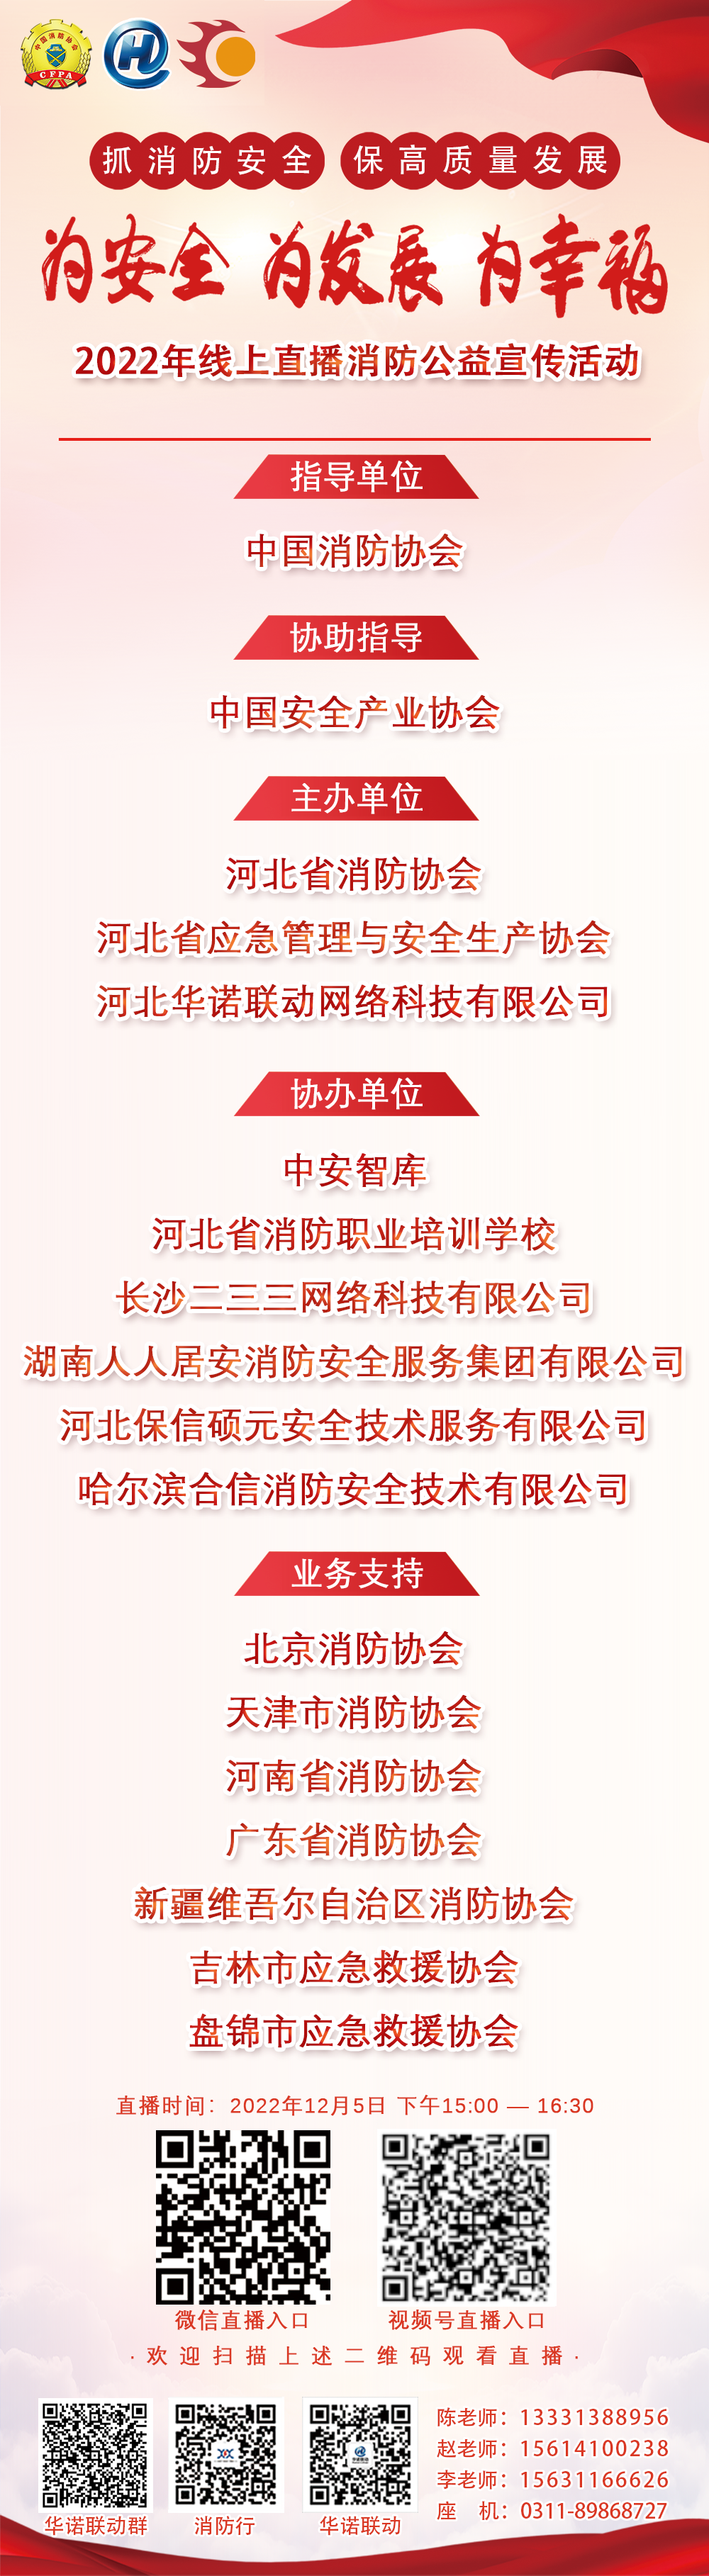 直播预告|12月5日!中国消防协会、河北华诺联动网络科技有限公司“为安全、为发展、为幸福”线上直播消防公益宣传活动